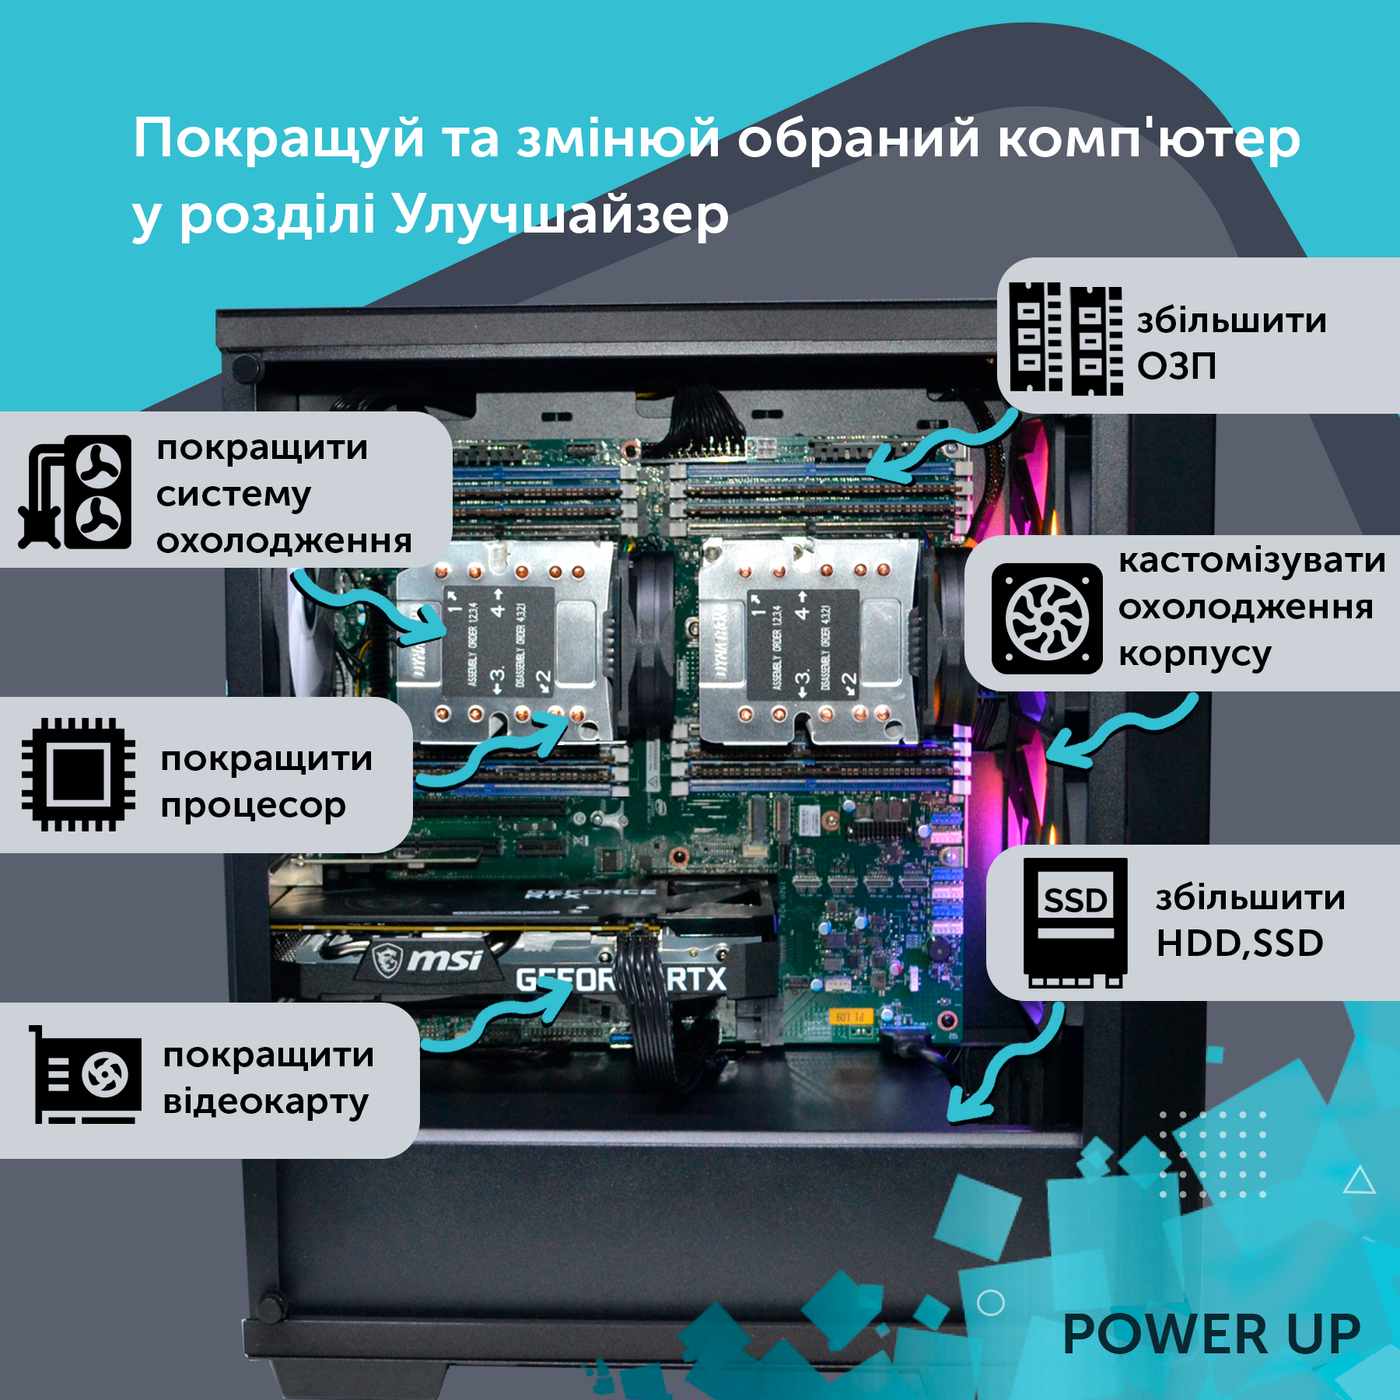 Робоча станція PowerUp Desktop #153 Ryzen 9 5950x/32 GB/SSD 512GB/GeForce GTX 1650 4GB